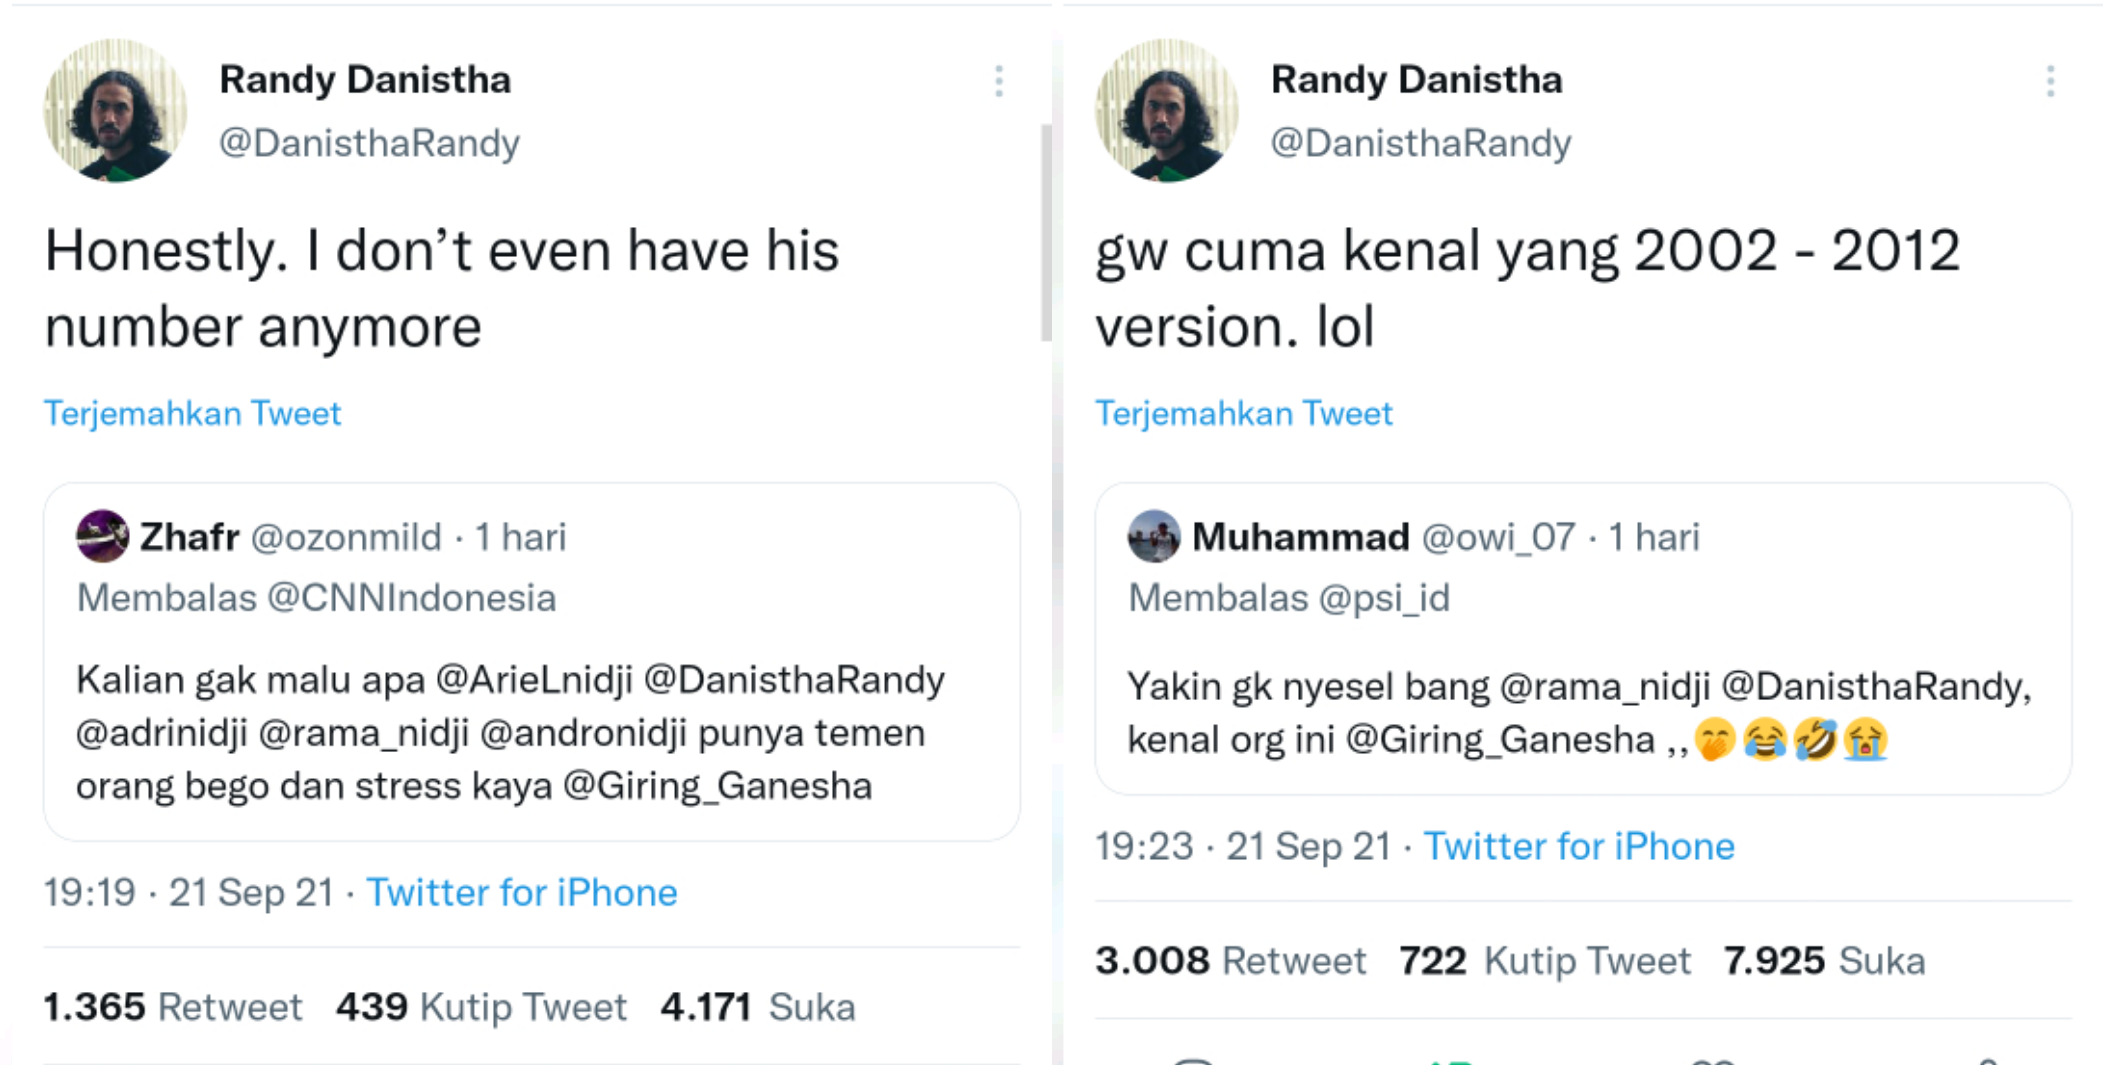 Randy Danistha menjawab pertanyaan netizen yang meminta pendapatnya soal Ketua Umum DPP PSI, Giring Ganesha.*